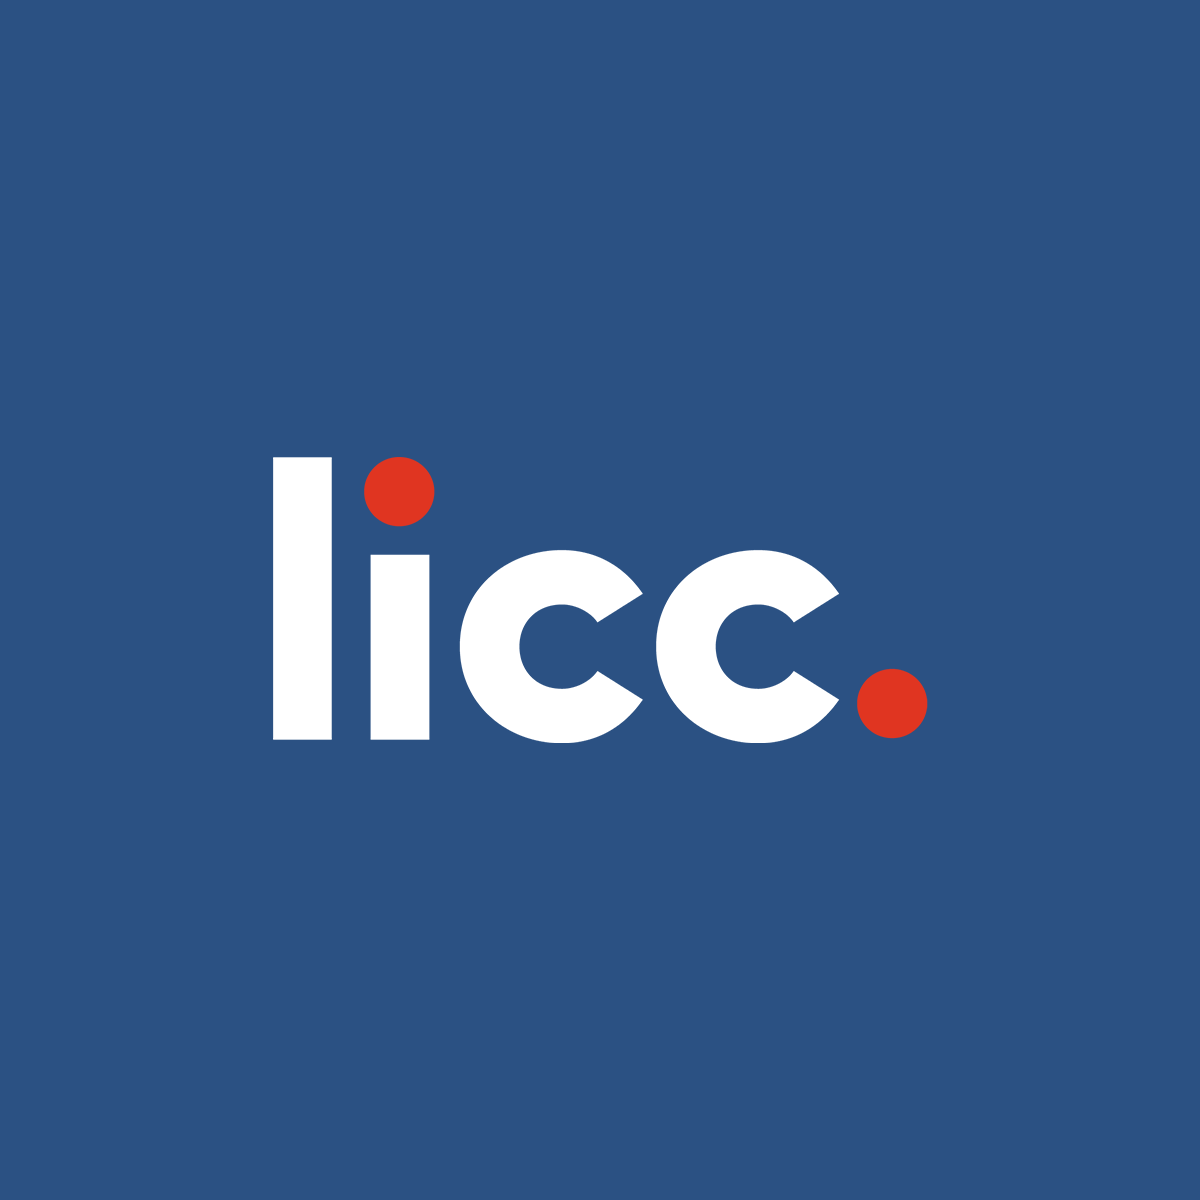 (c) Licc.org.uk